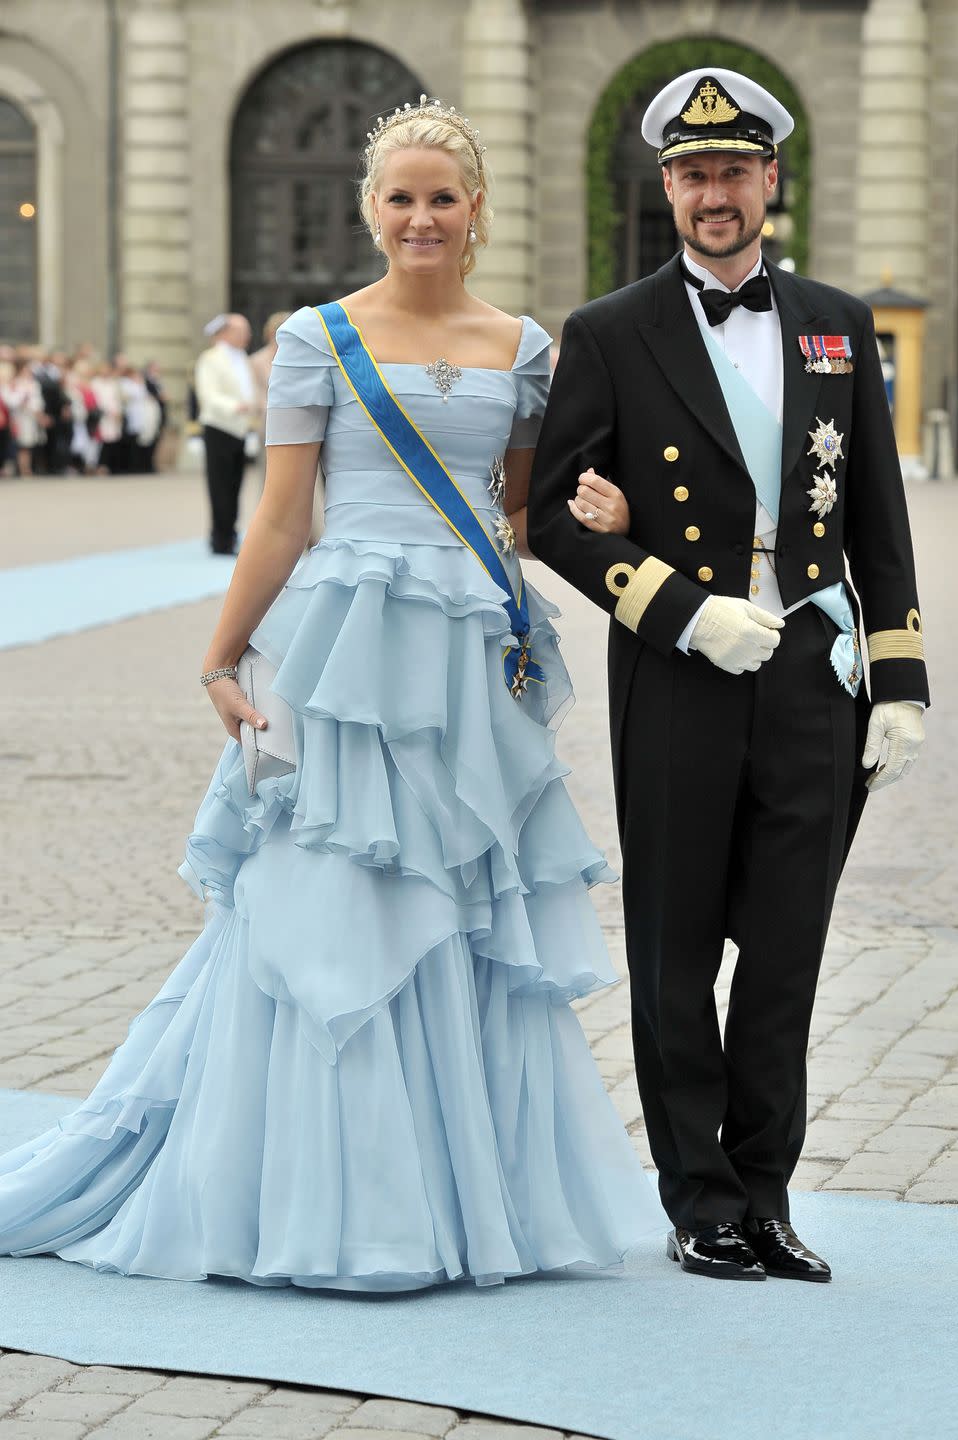 4) Crown Princess Mette-Marit